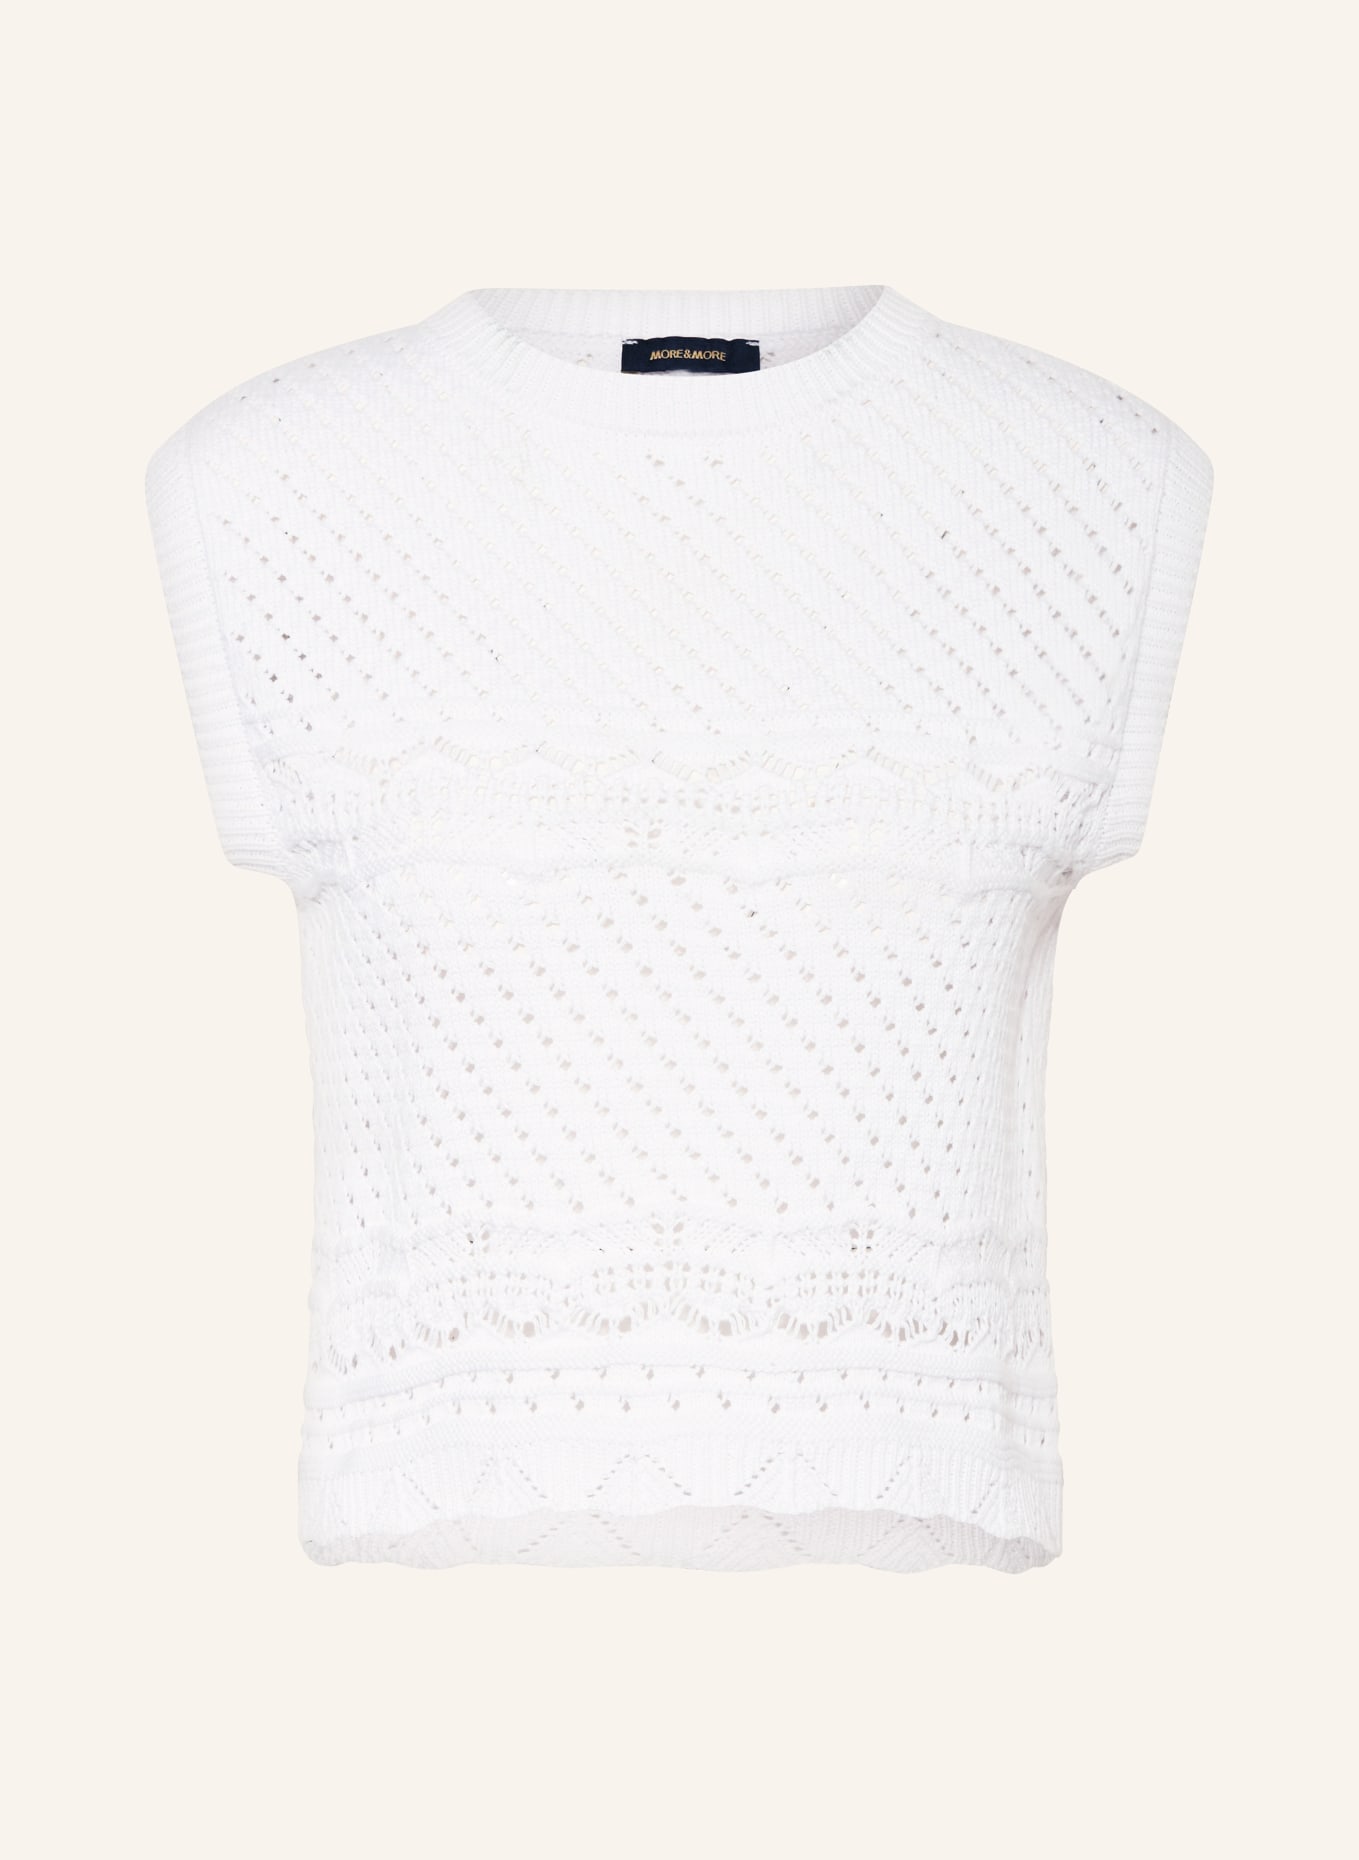 MORE & MORE Sweater vest, Color: WHITE (Image 1)